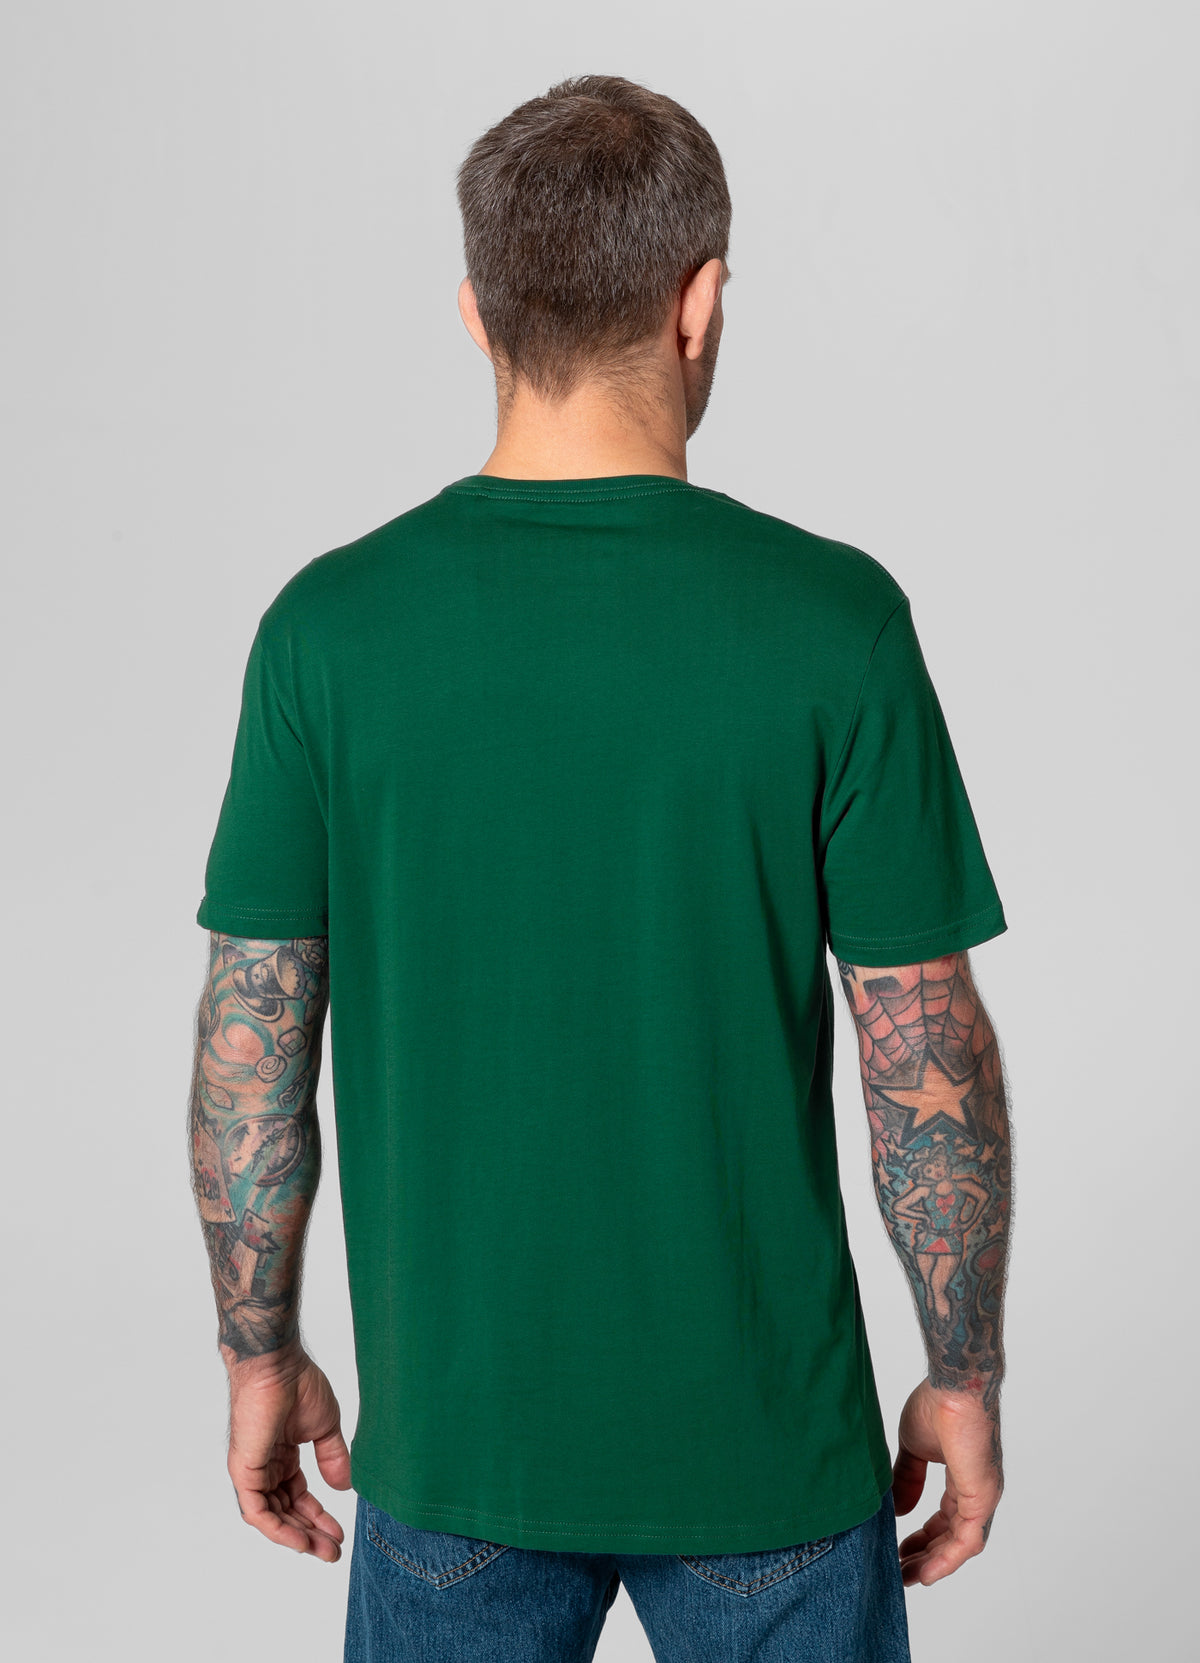 SPORT DOG Green T-shirt